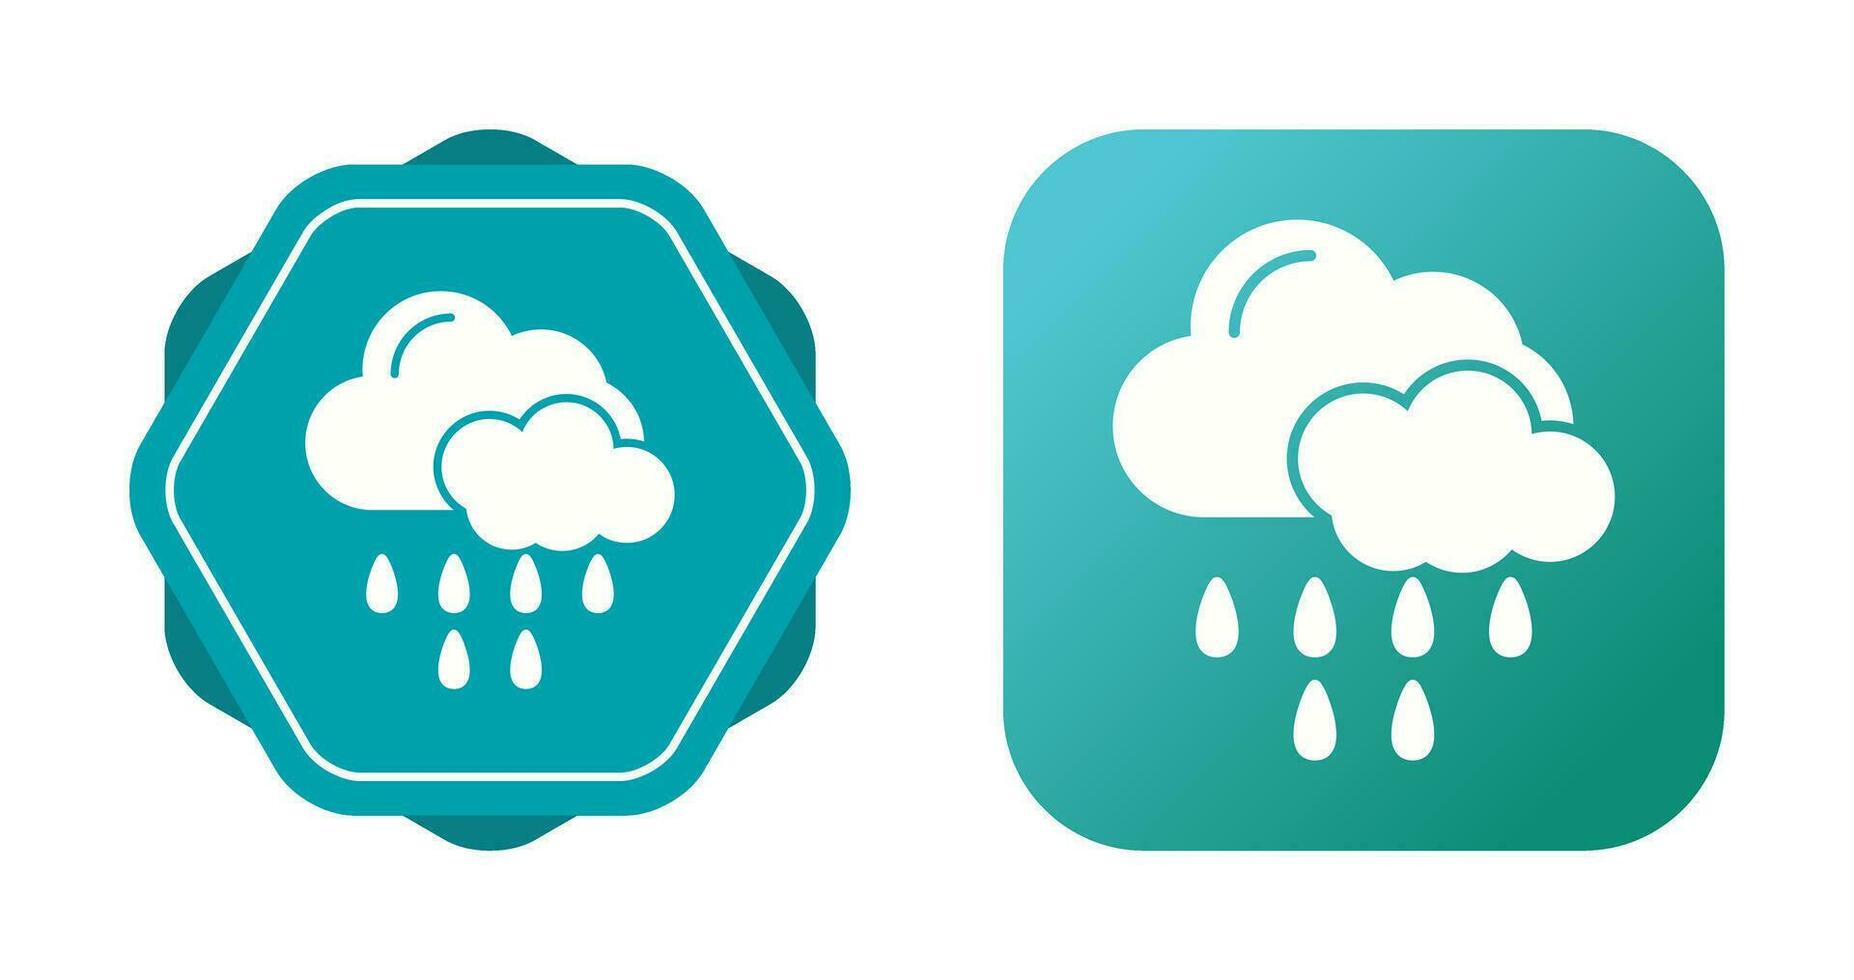 icône de vecteur de pluie